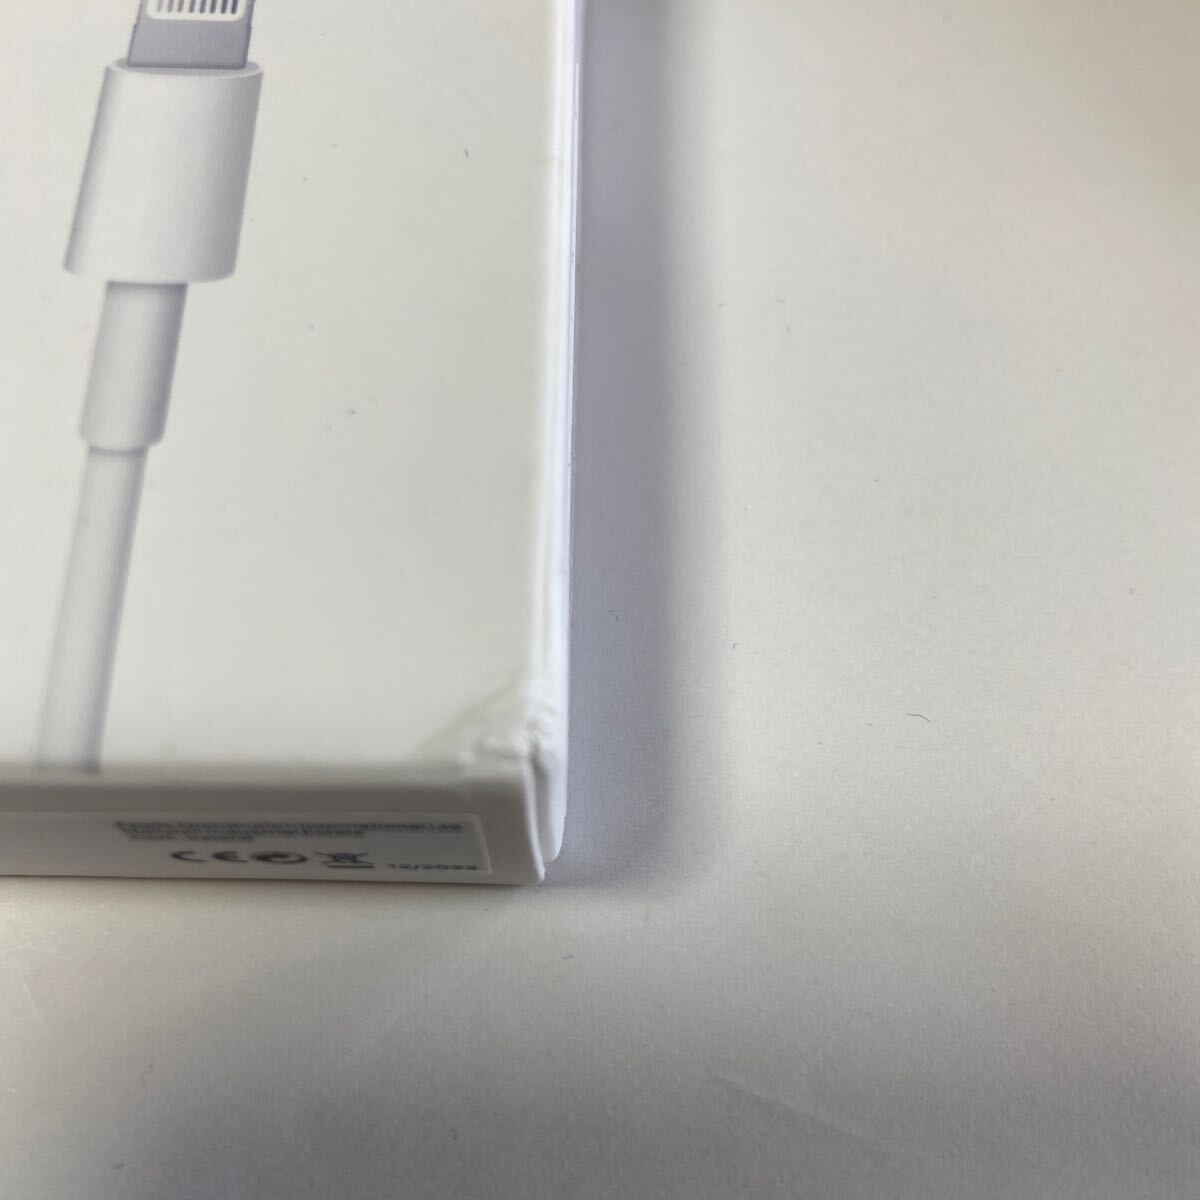 Apple USB-Cライトニングケーブル セット